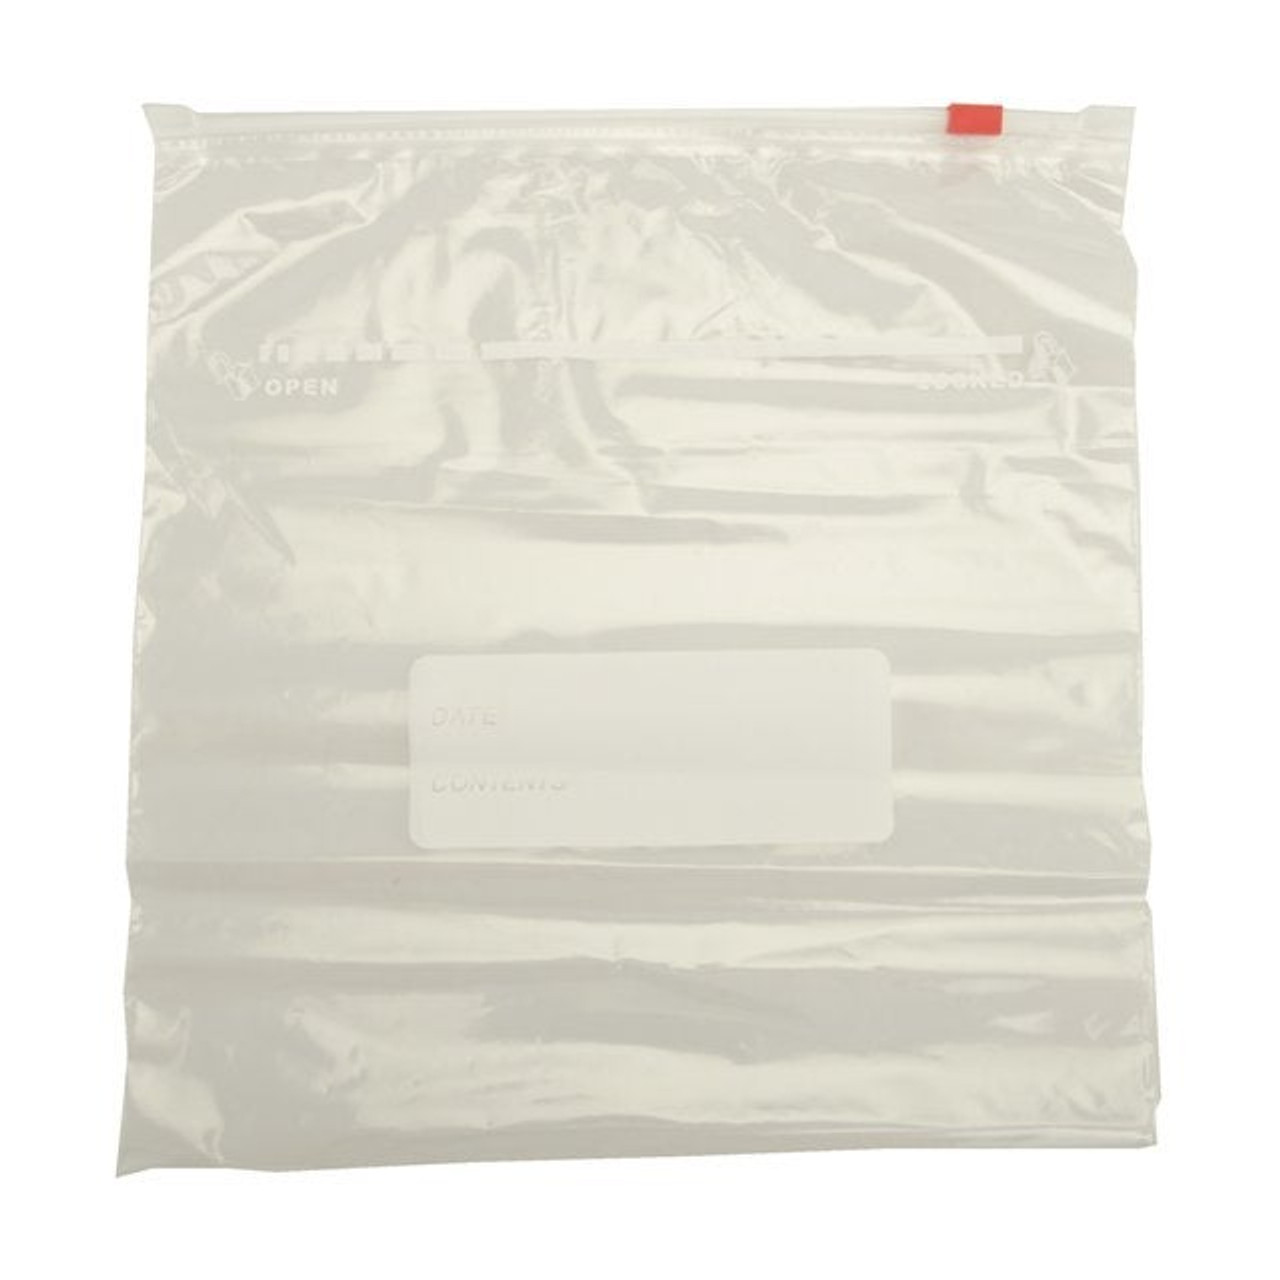 Gordon Choice Large Clear Plastic Bags, 26.8X27.9Cm, With Reclosable Slider | 75UN/Unit, 6 Units/Case